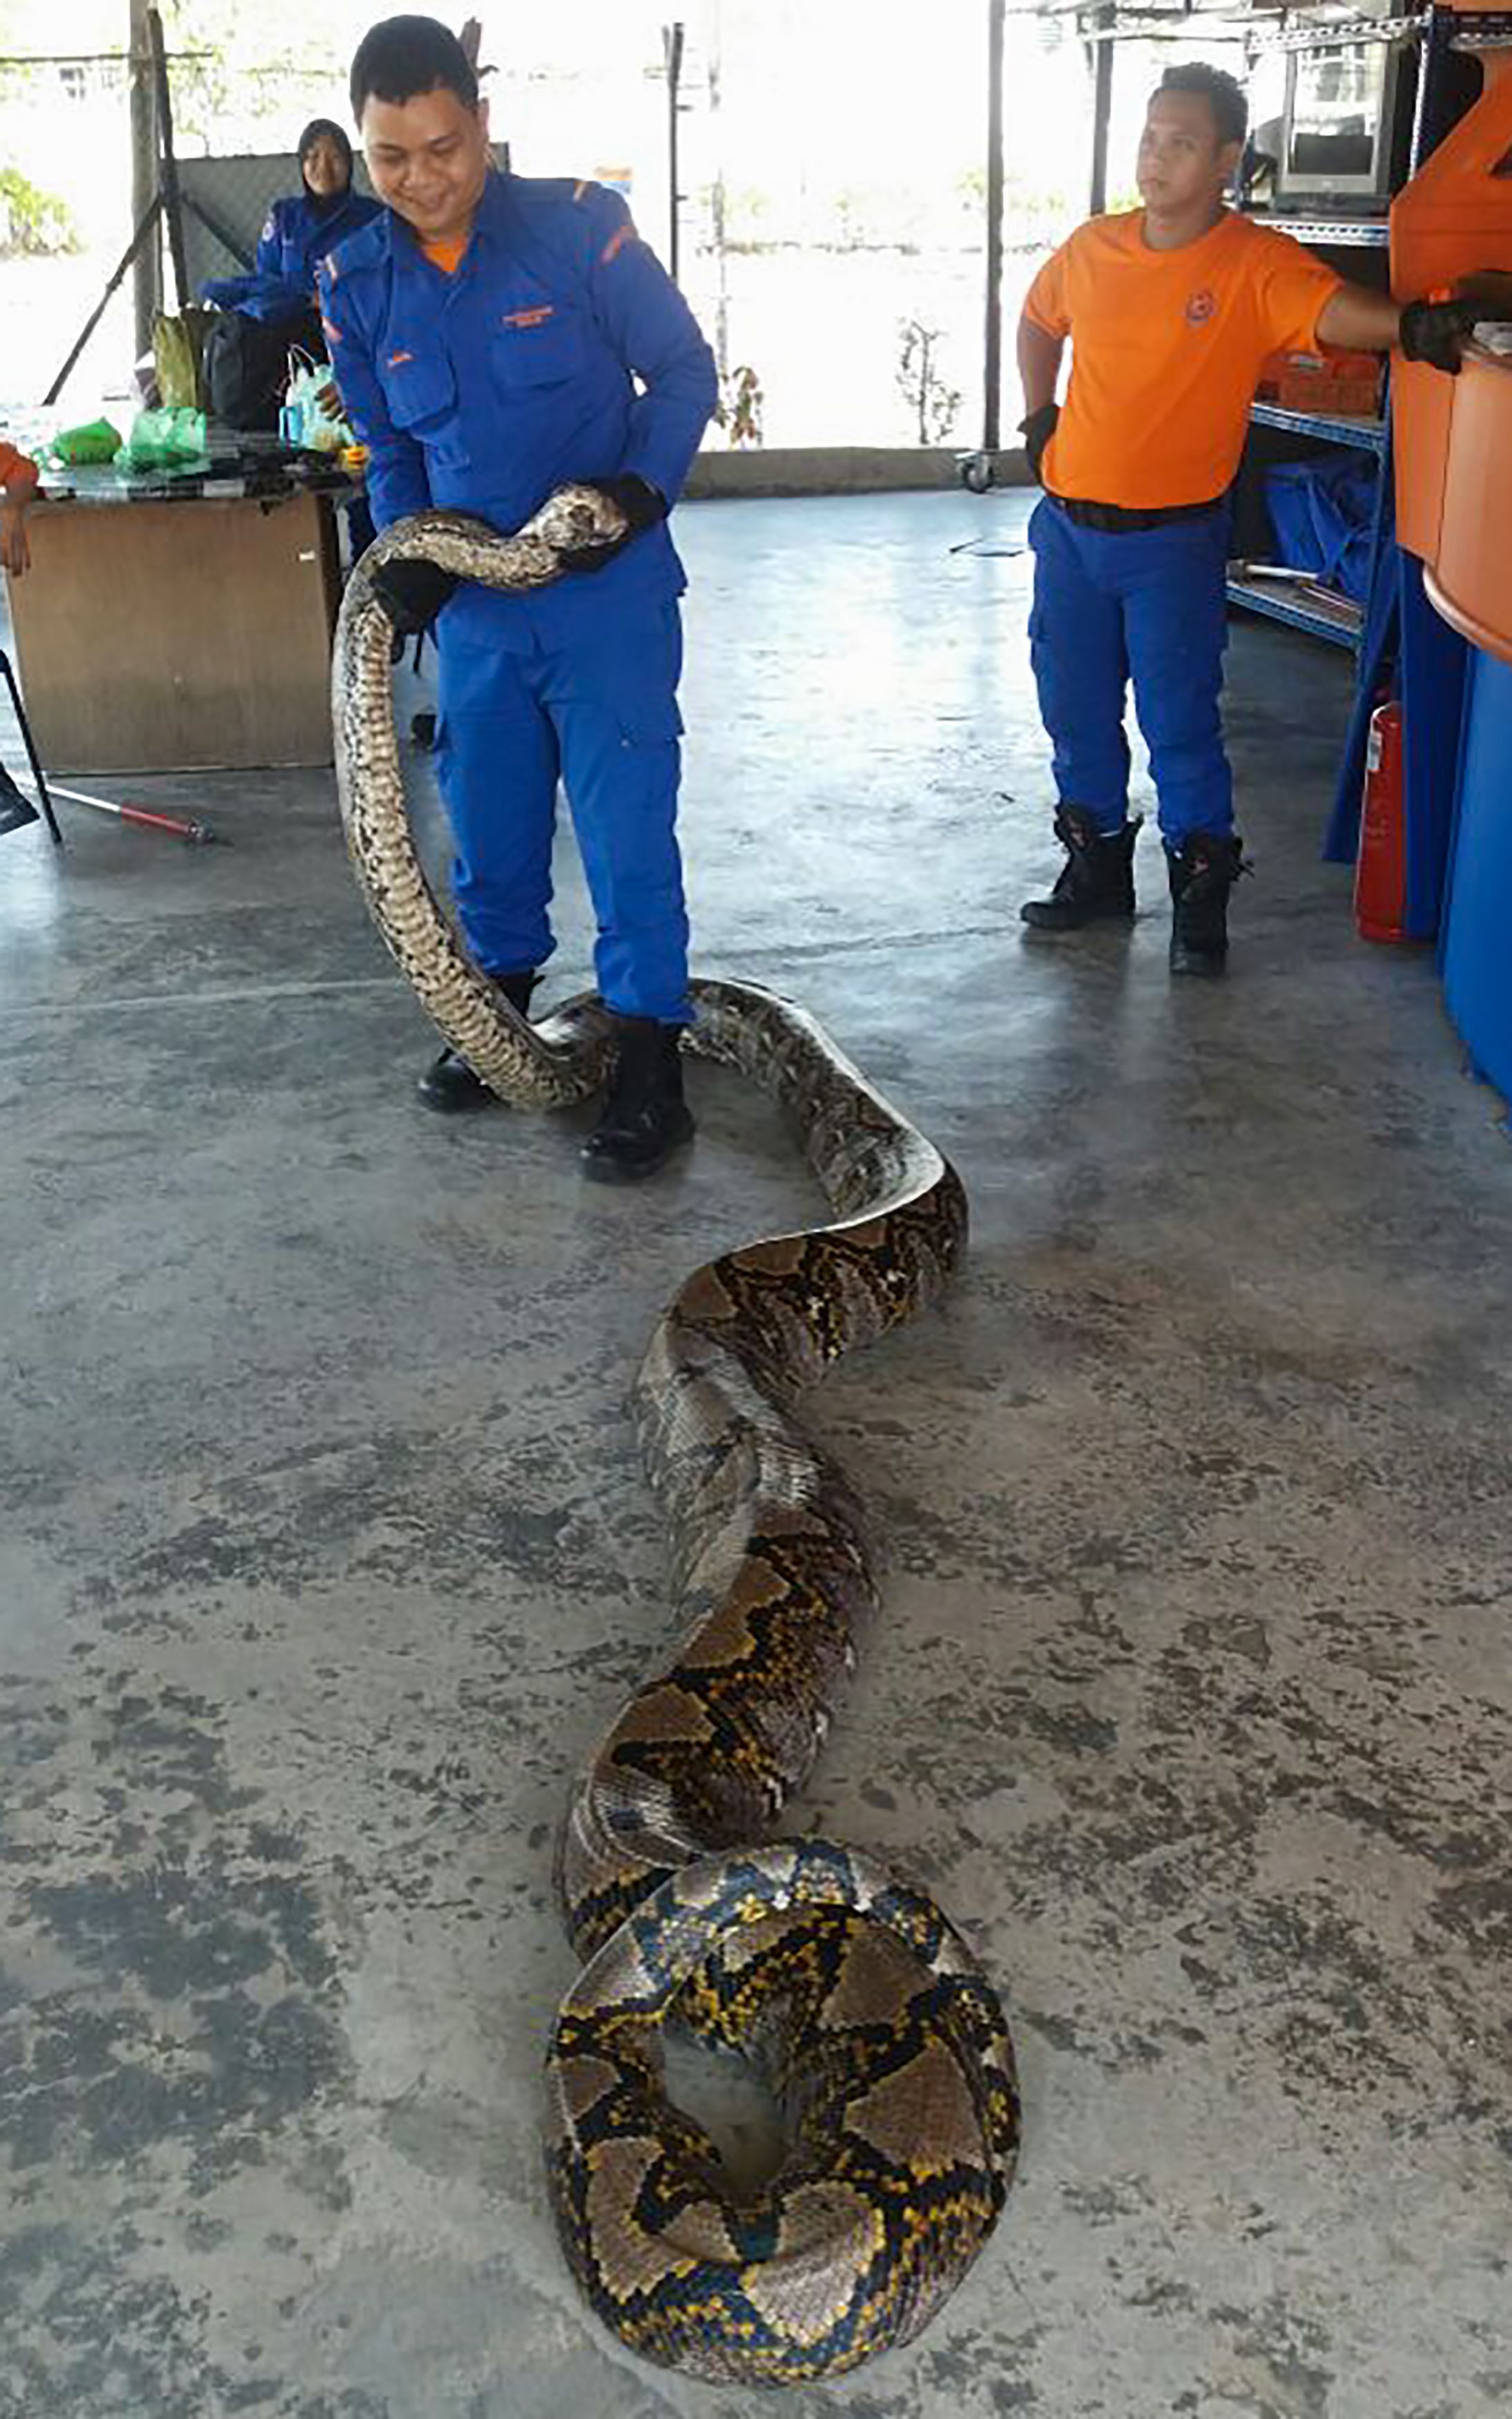 worlds biggest snake found dead